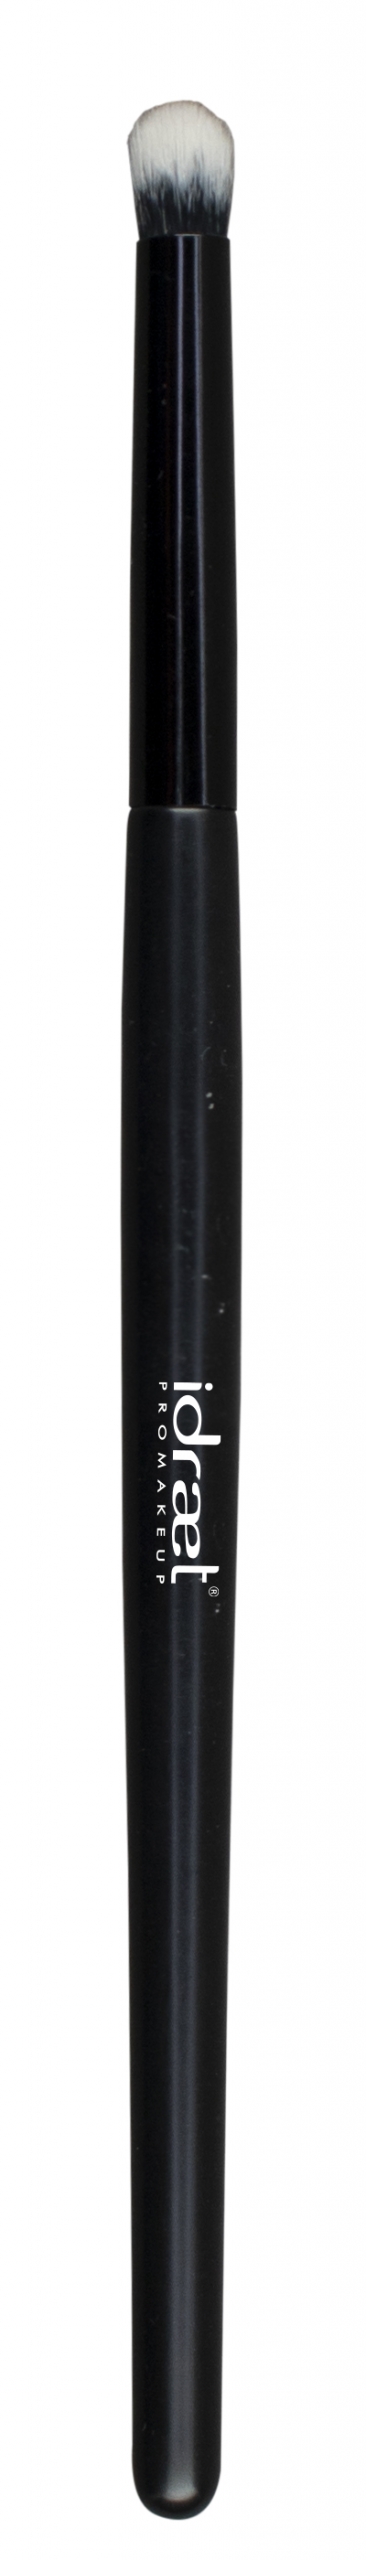 IDRAET - Pincel Blender Pequeño- S60 Small Eye Blender Brush